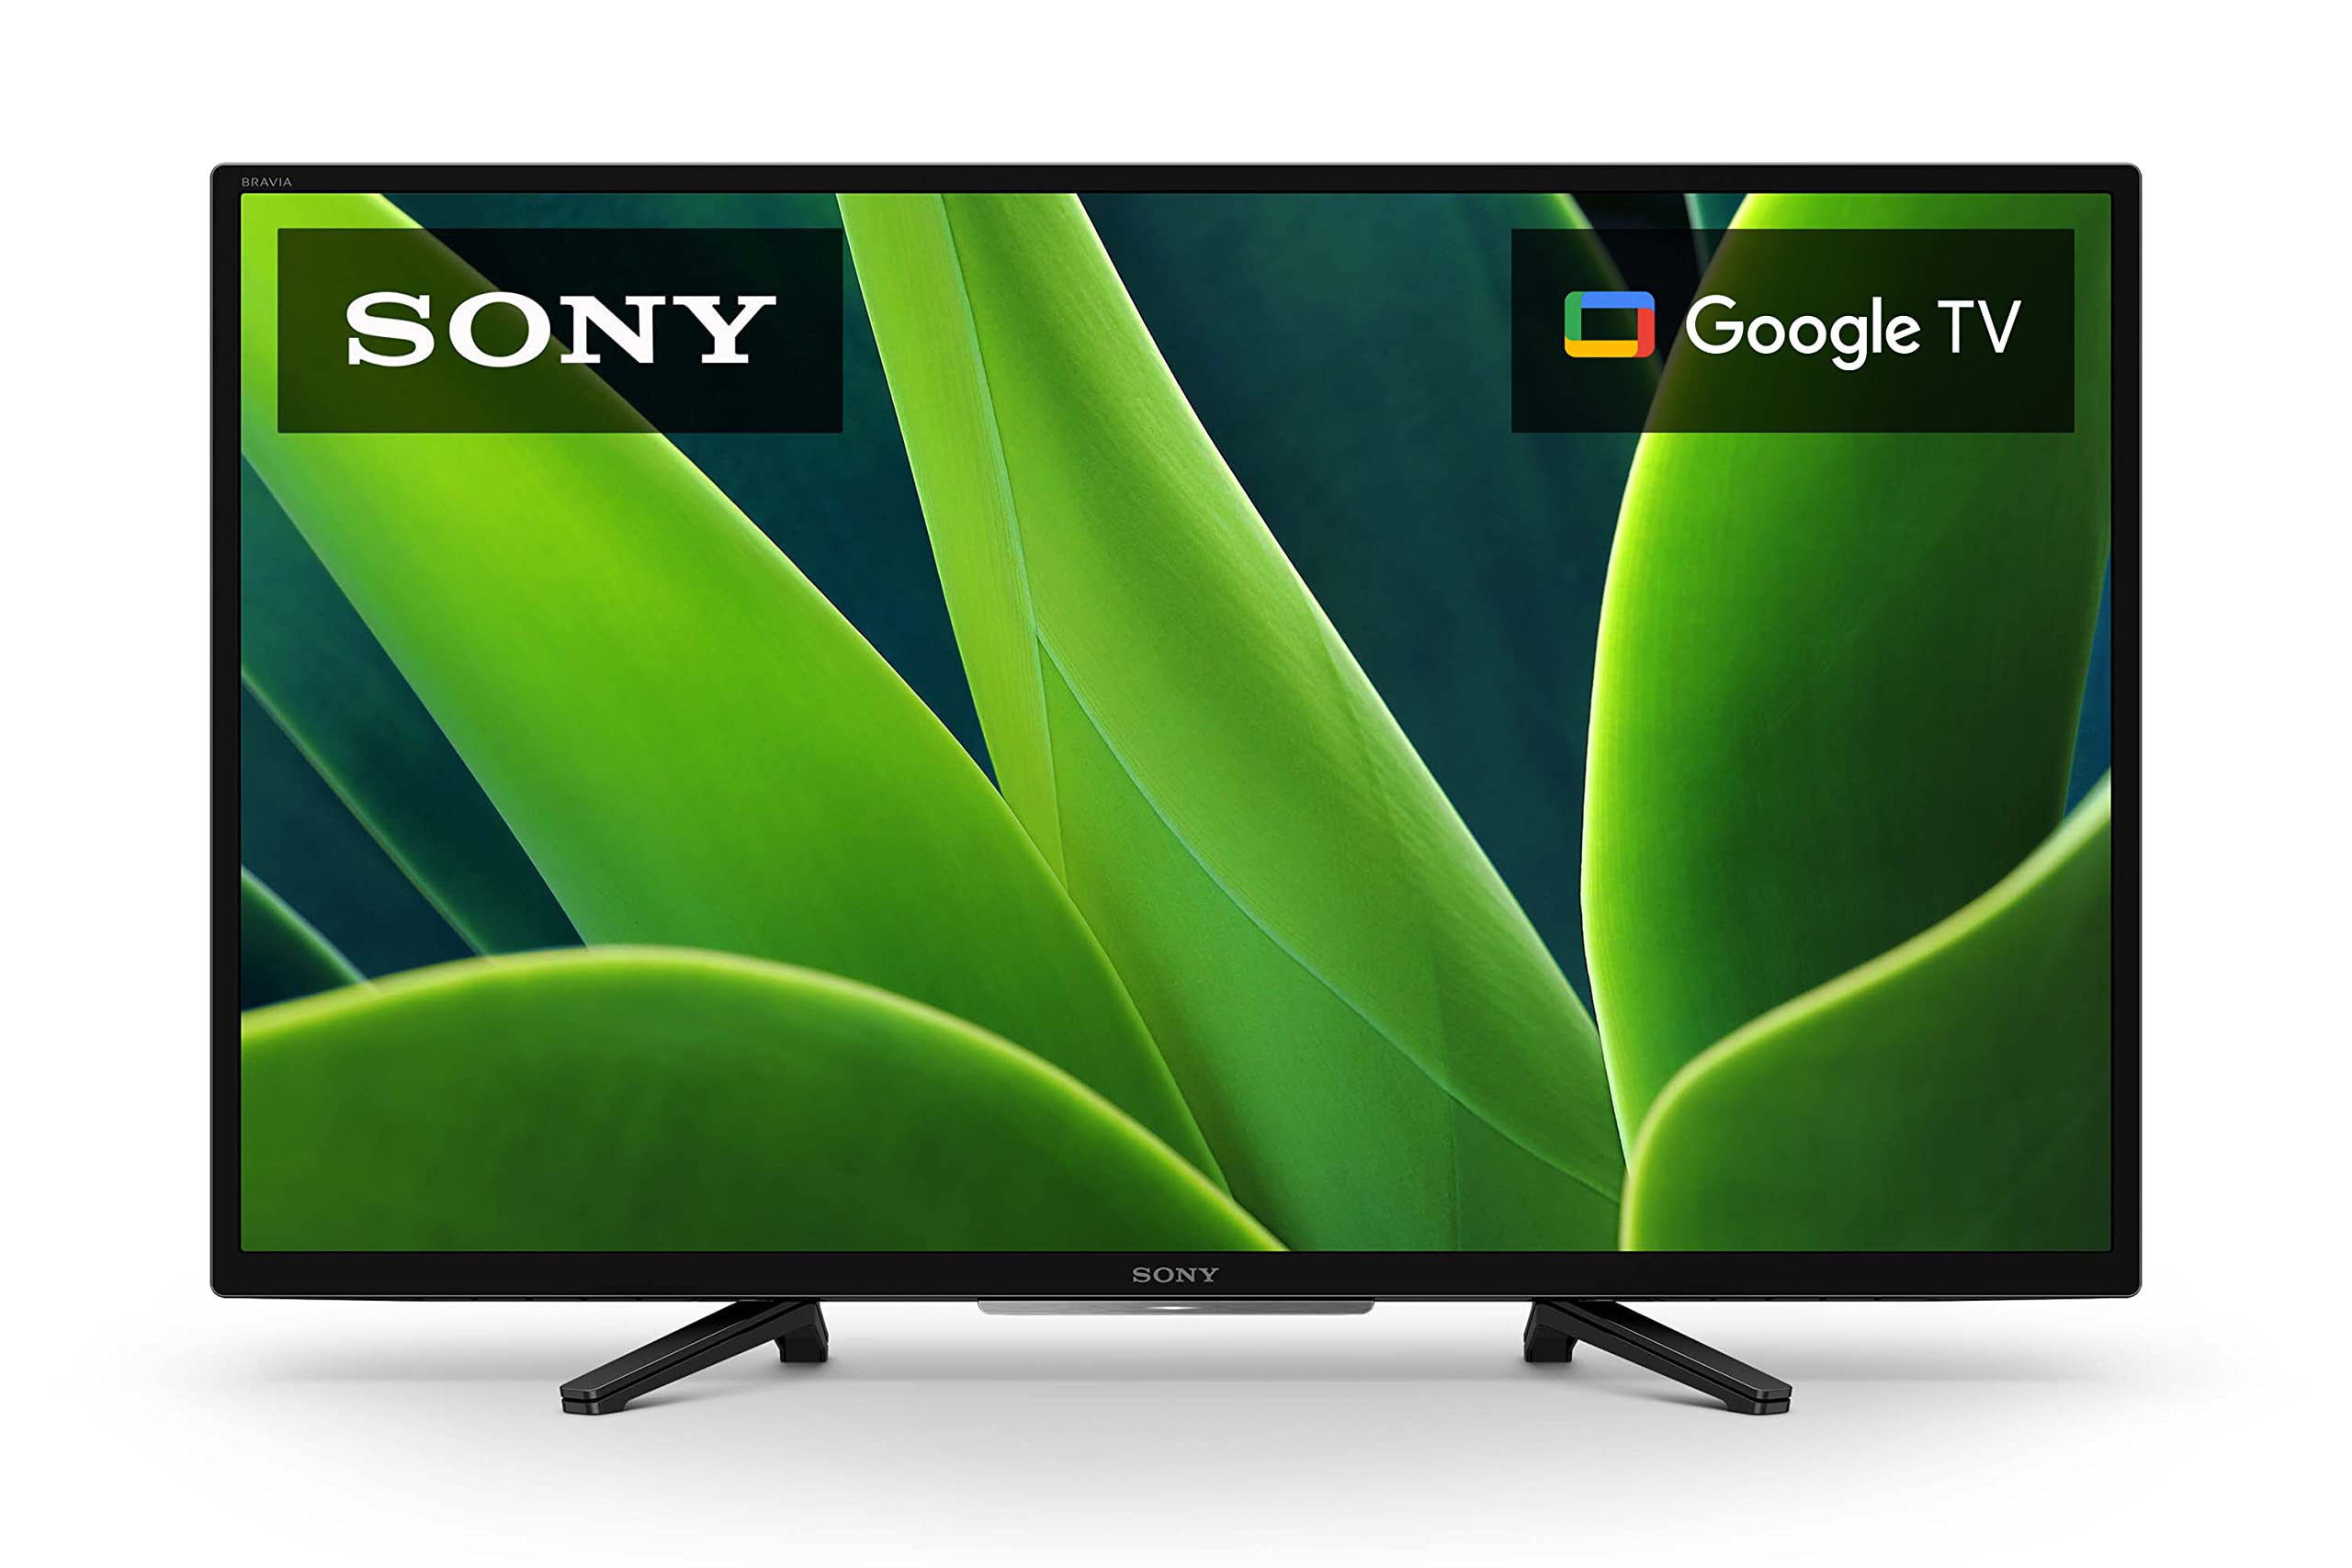 Sony 32 インチ 720p HD LED HDR テレビ W830K シリーズ Google TV および Google アシスタント搭載 - 2022 年モデル